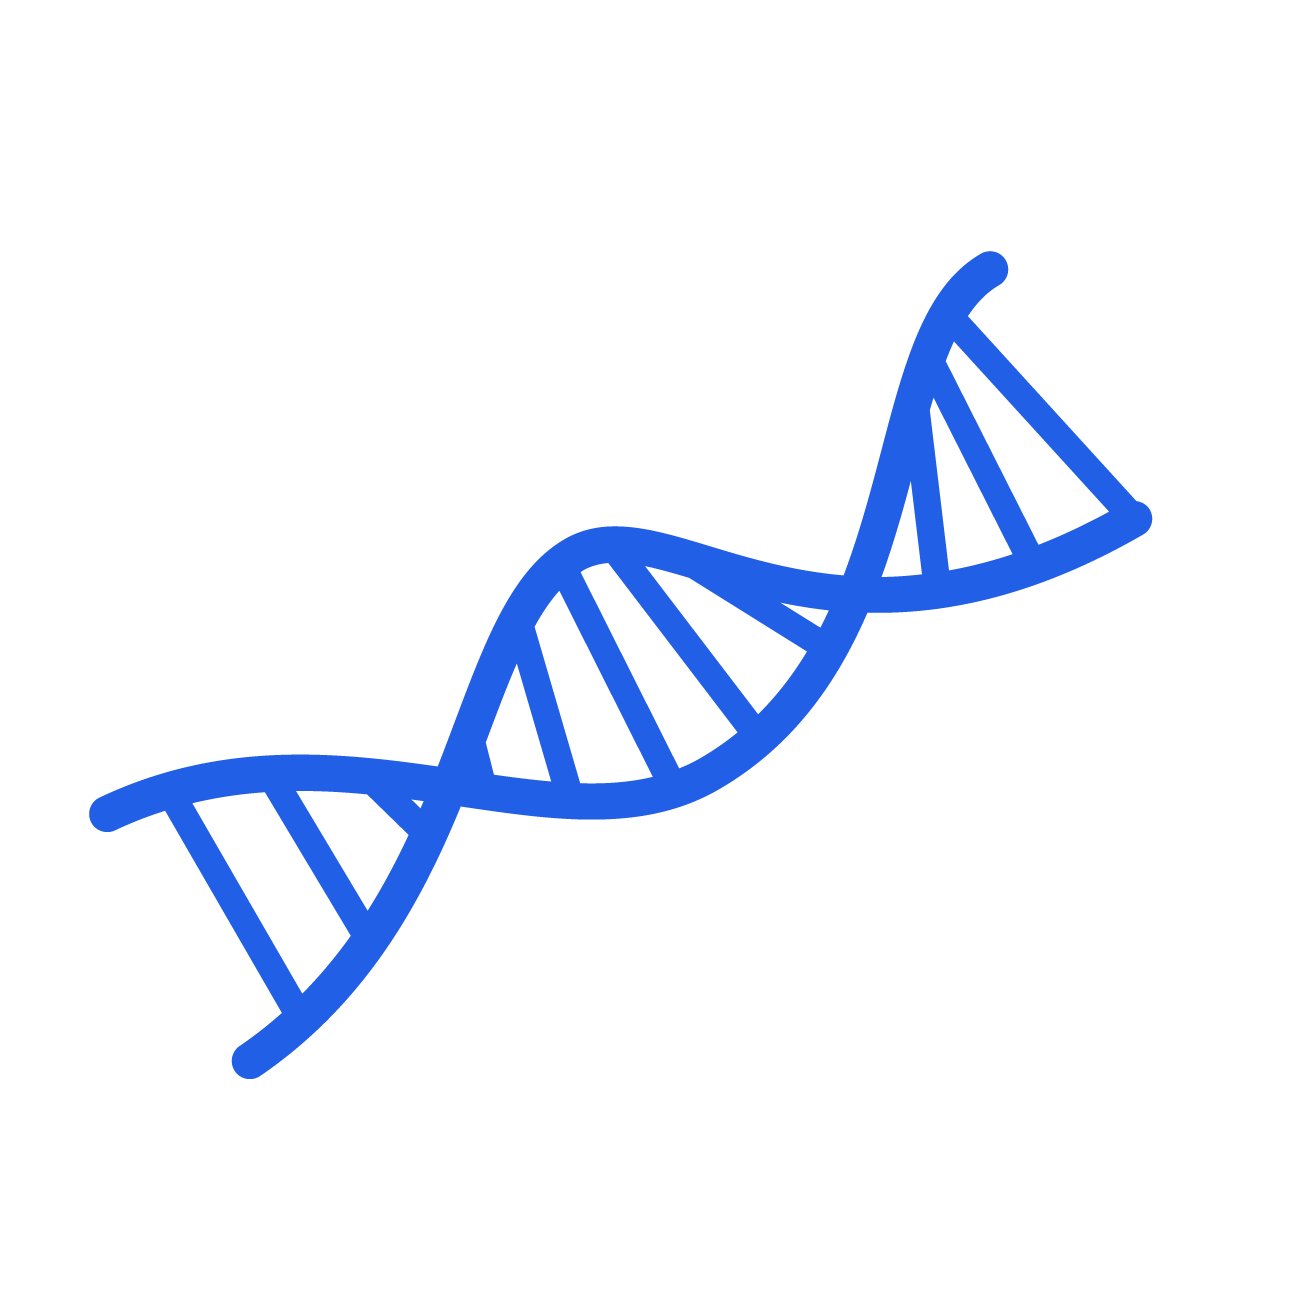 遺伝子検査キットについての情報を遺伝子検査キットマニアが呟いていきます。